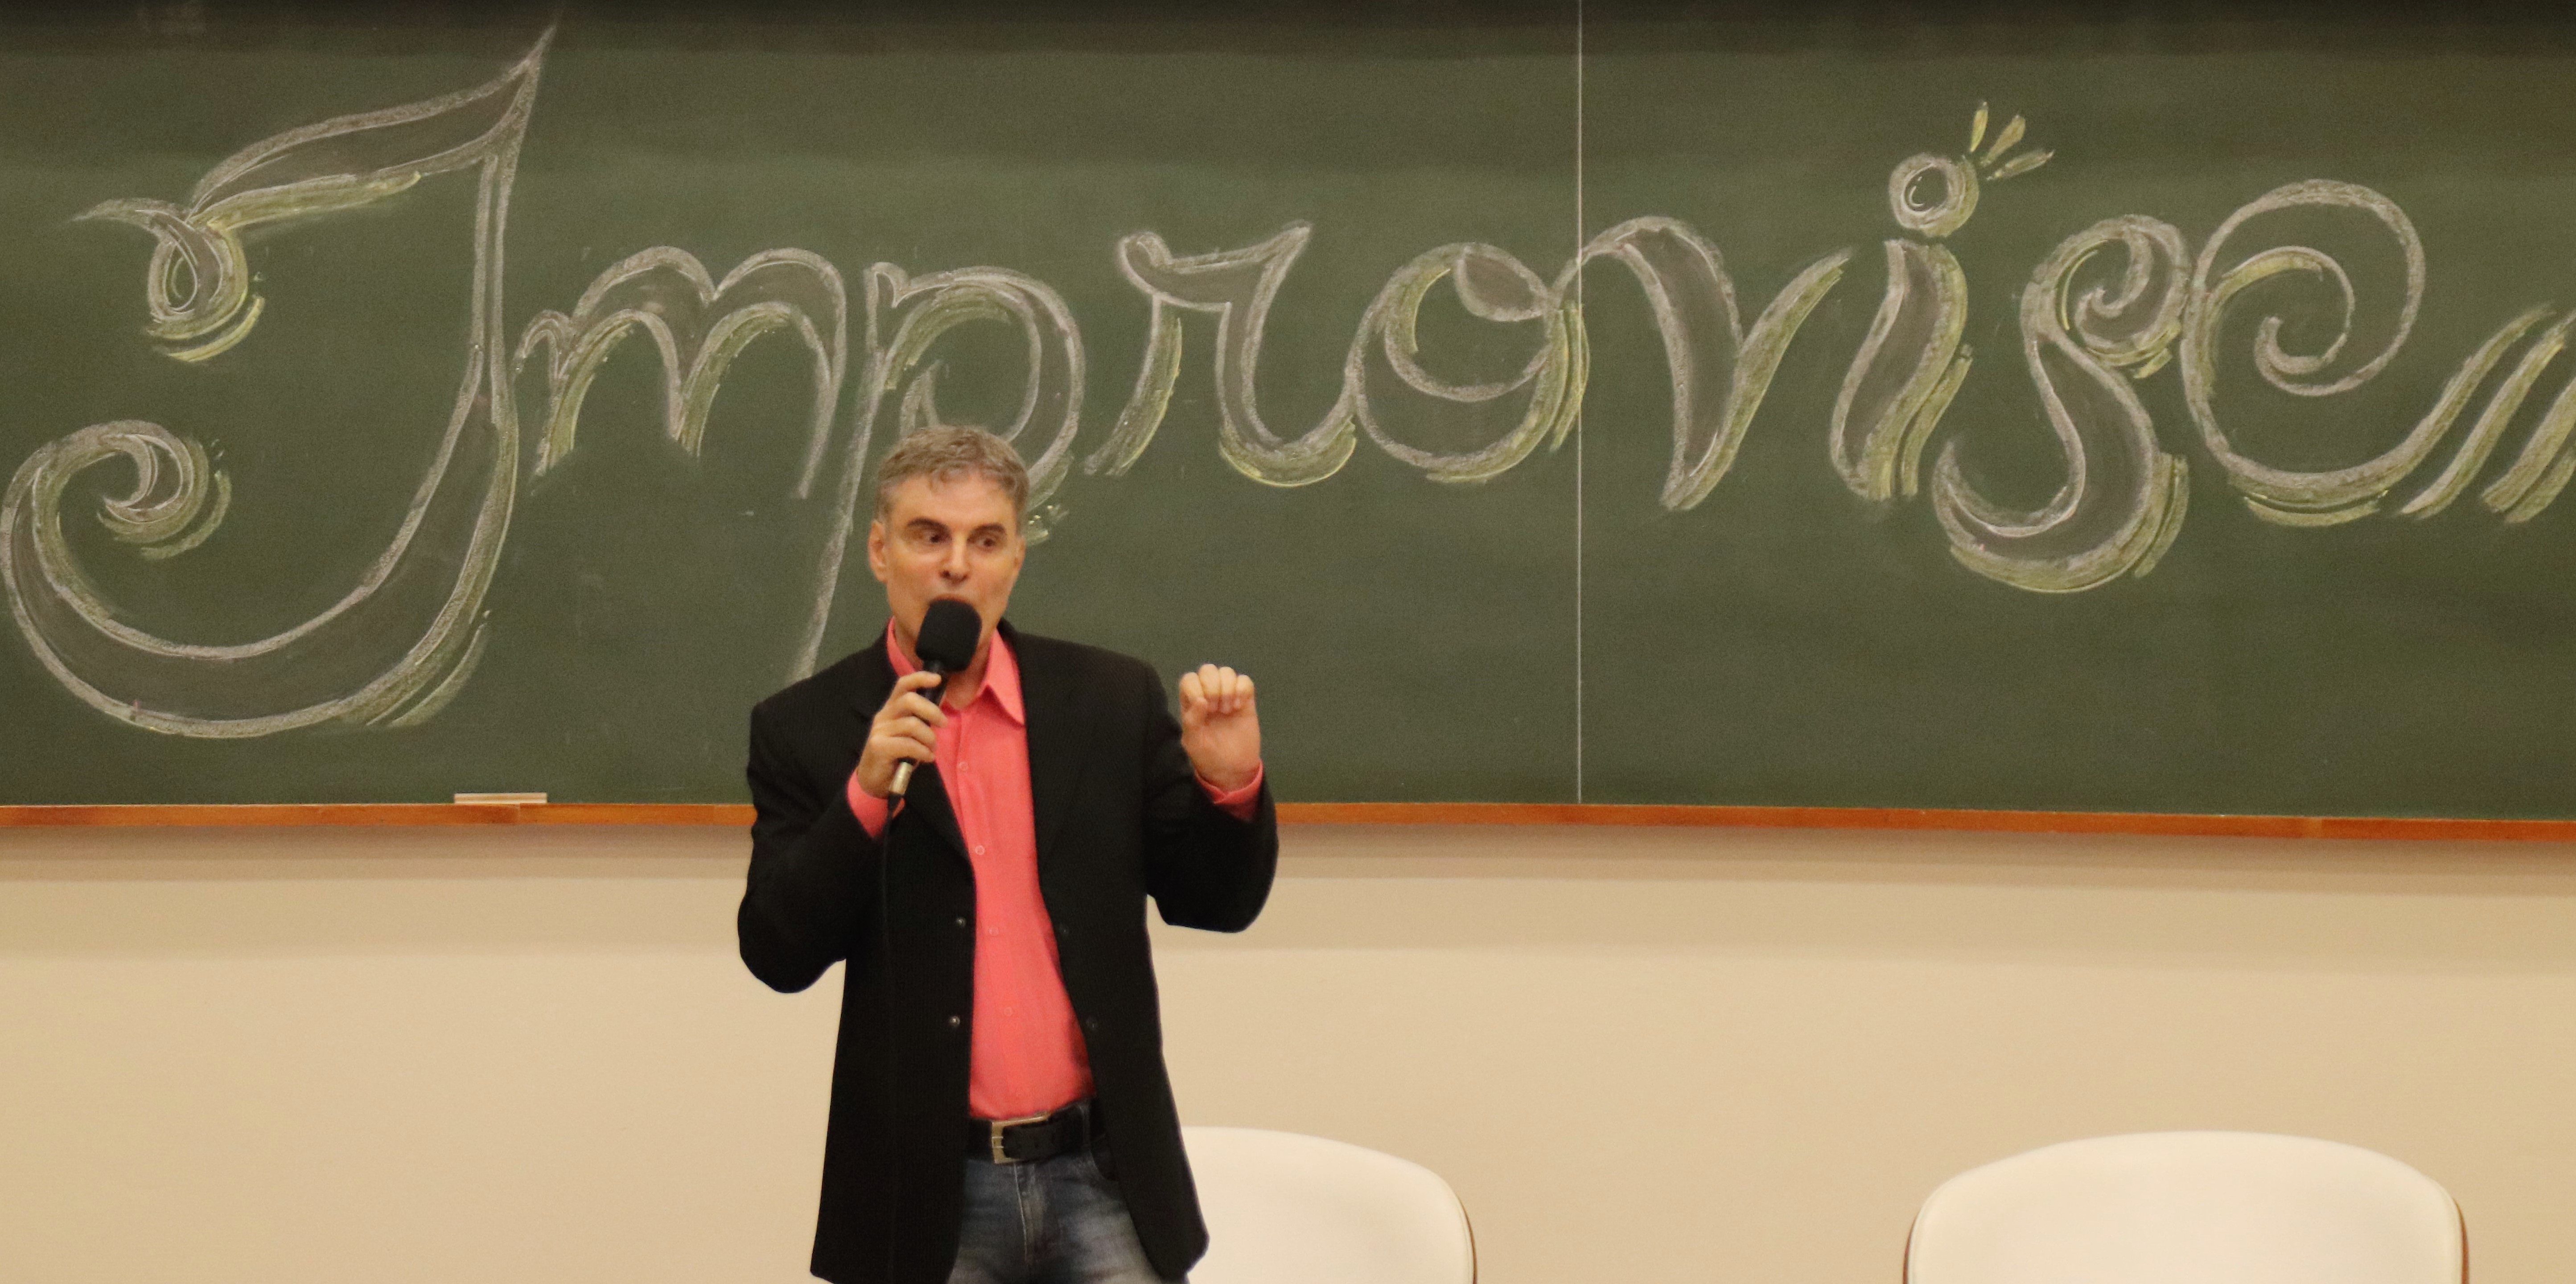 Radialista Renato Gaúcho deixa Rádio Caiobá, em Curitiba, após 32 anos